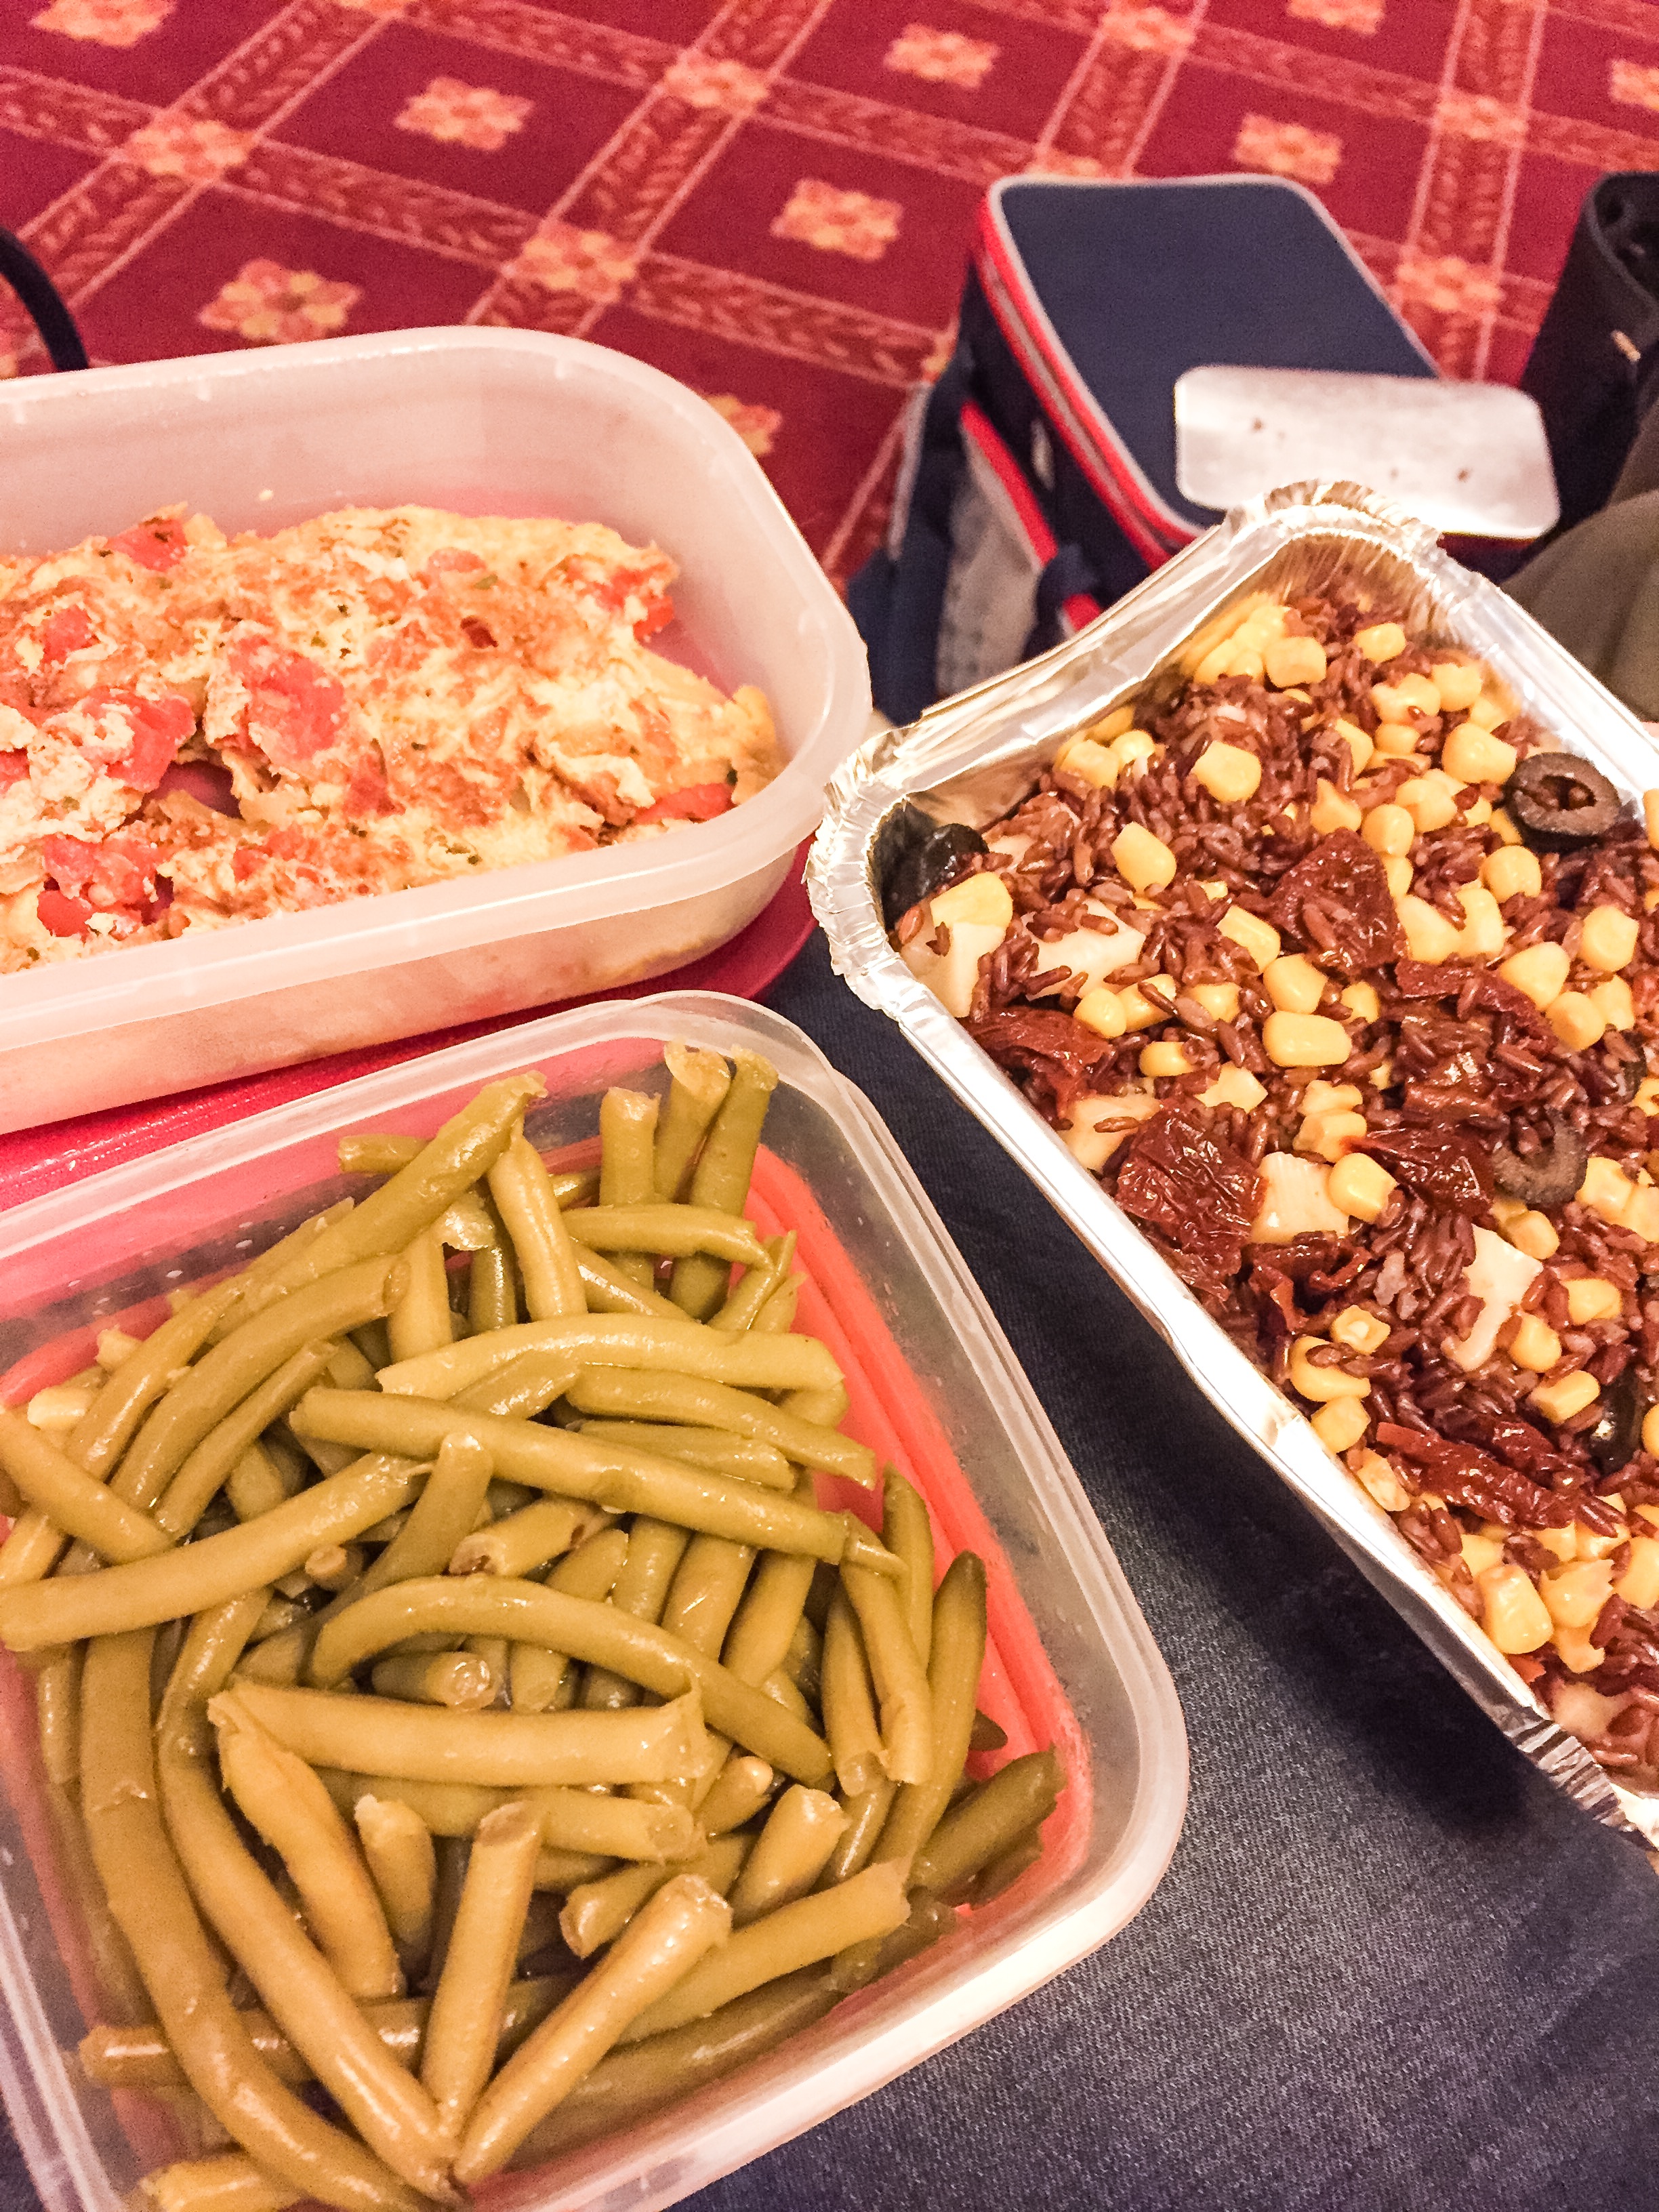 Sinistra: pranzo Ery fagiolini e frittata con cipolla e pomodoro. Destra pranzo Mely: riso rosso con mais, festa e olive